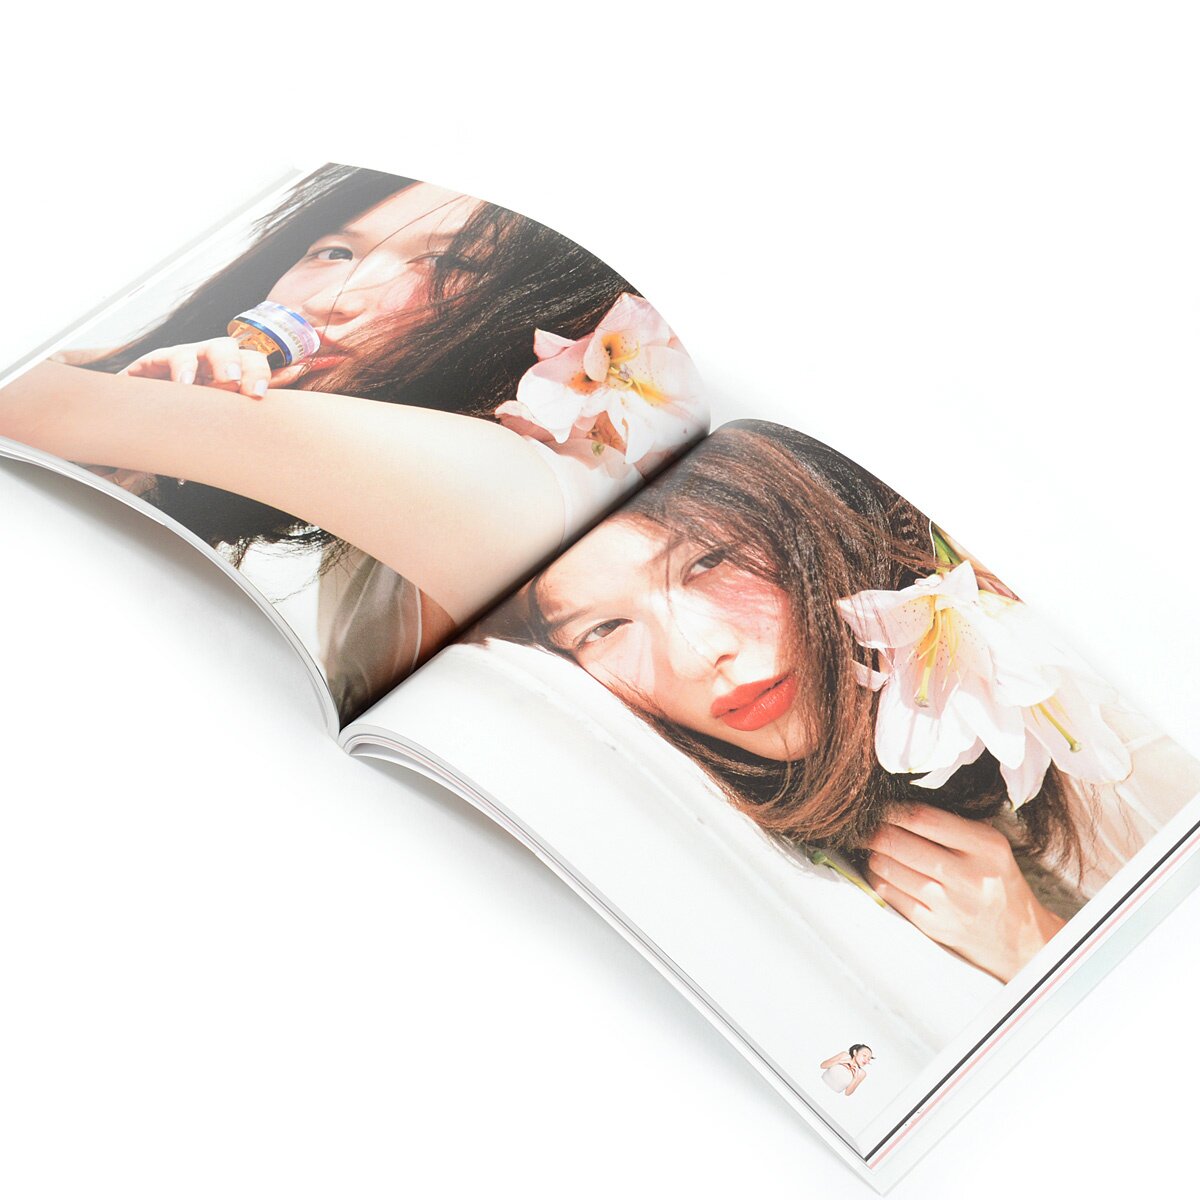 Shinobu Igari 365-Day Makeup Encyclopedia 68% OFF - Tokyo Otaku Mode (TOM)